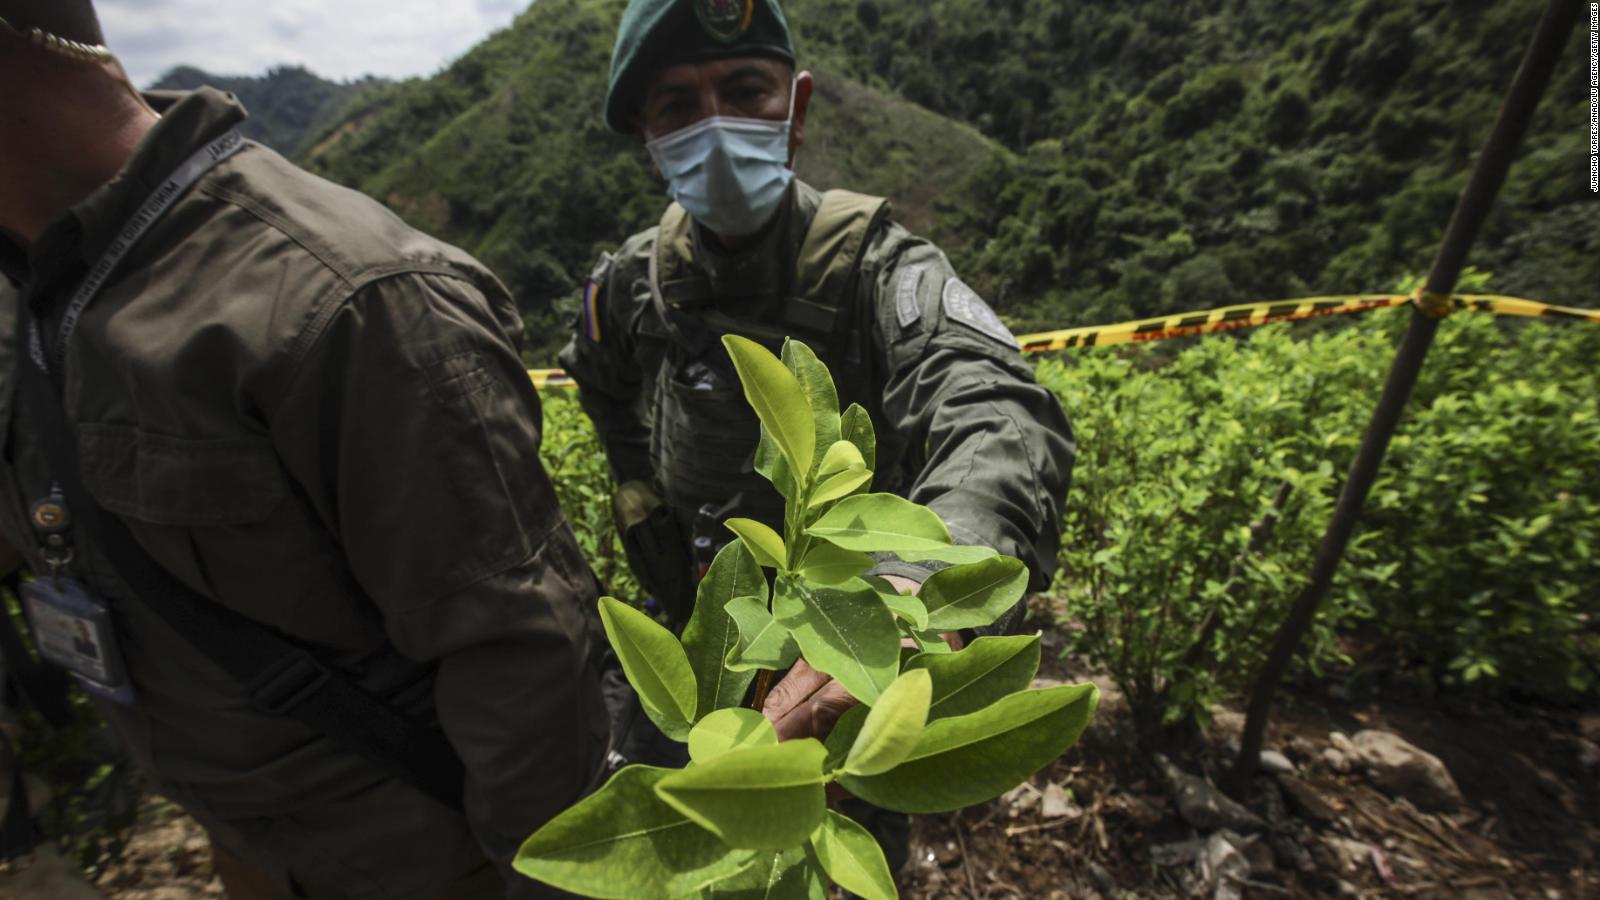 220821053306 03 colombia drugs full 169 - Colombia vislumbra caminos para acabar la guerra contra las drogas: ¿legalización de la marihuana y la cocaína?